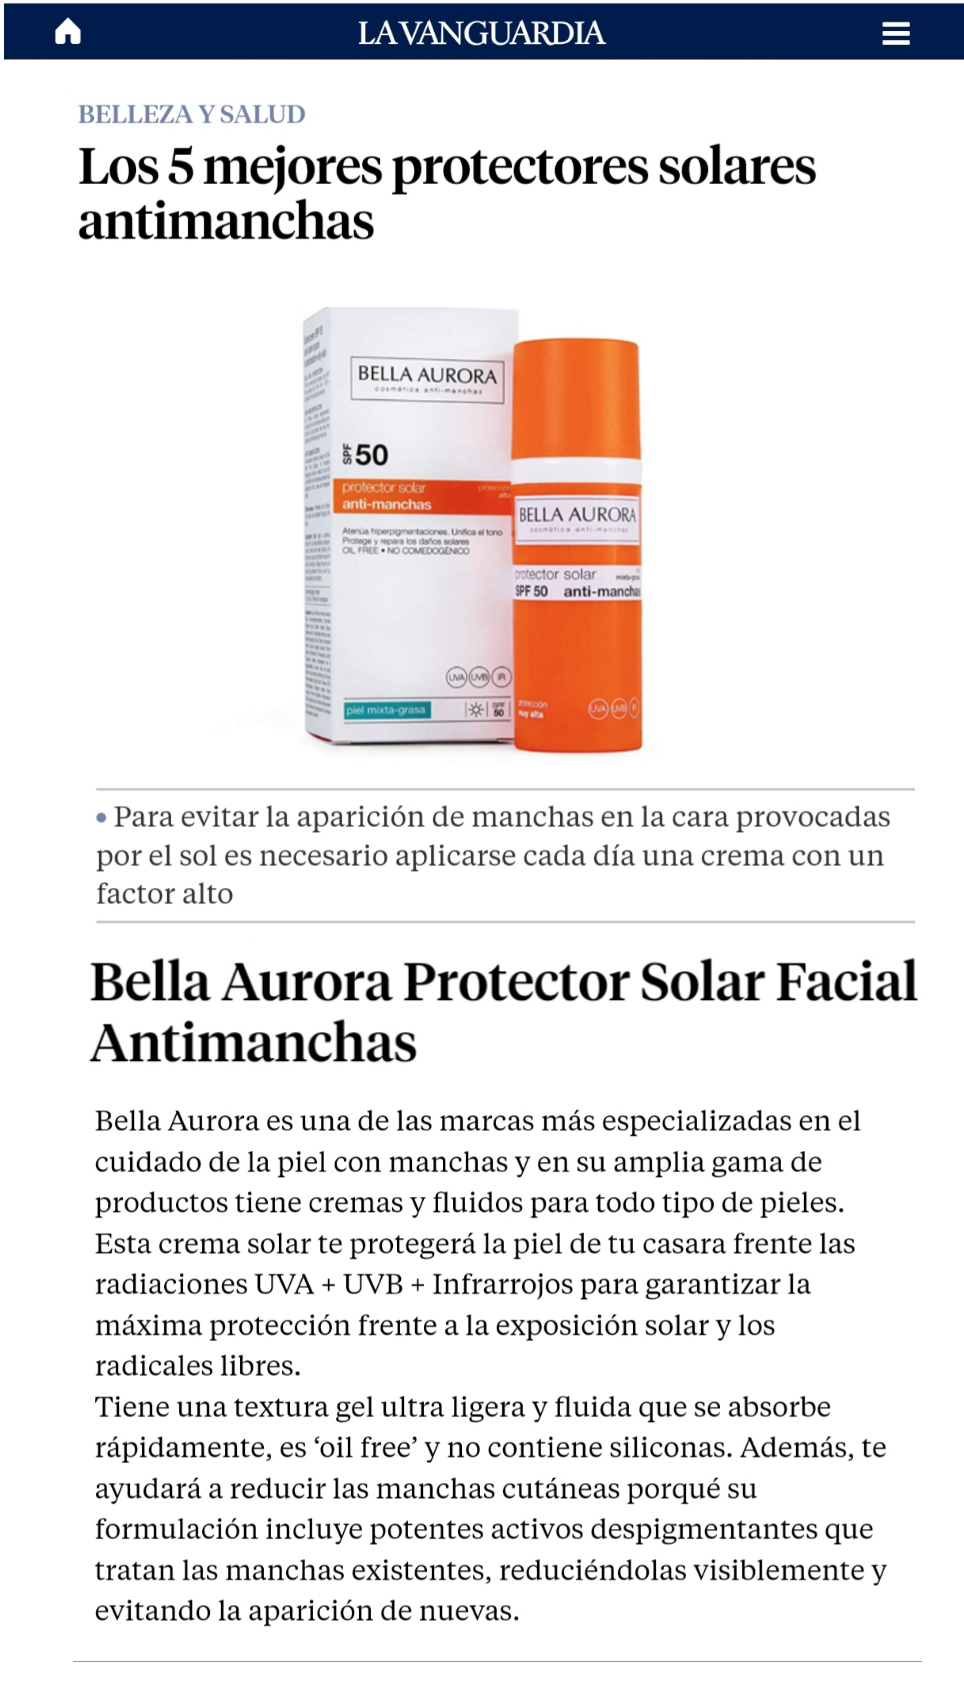 La Vanguardia incluye a Bella Aurora en el top 5 de los mejores protectores solares anti-manchas